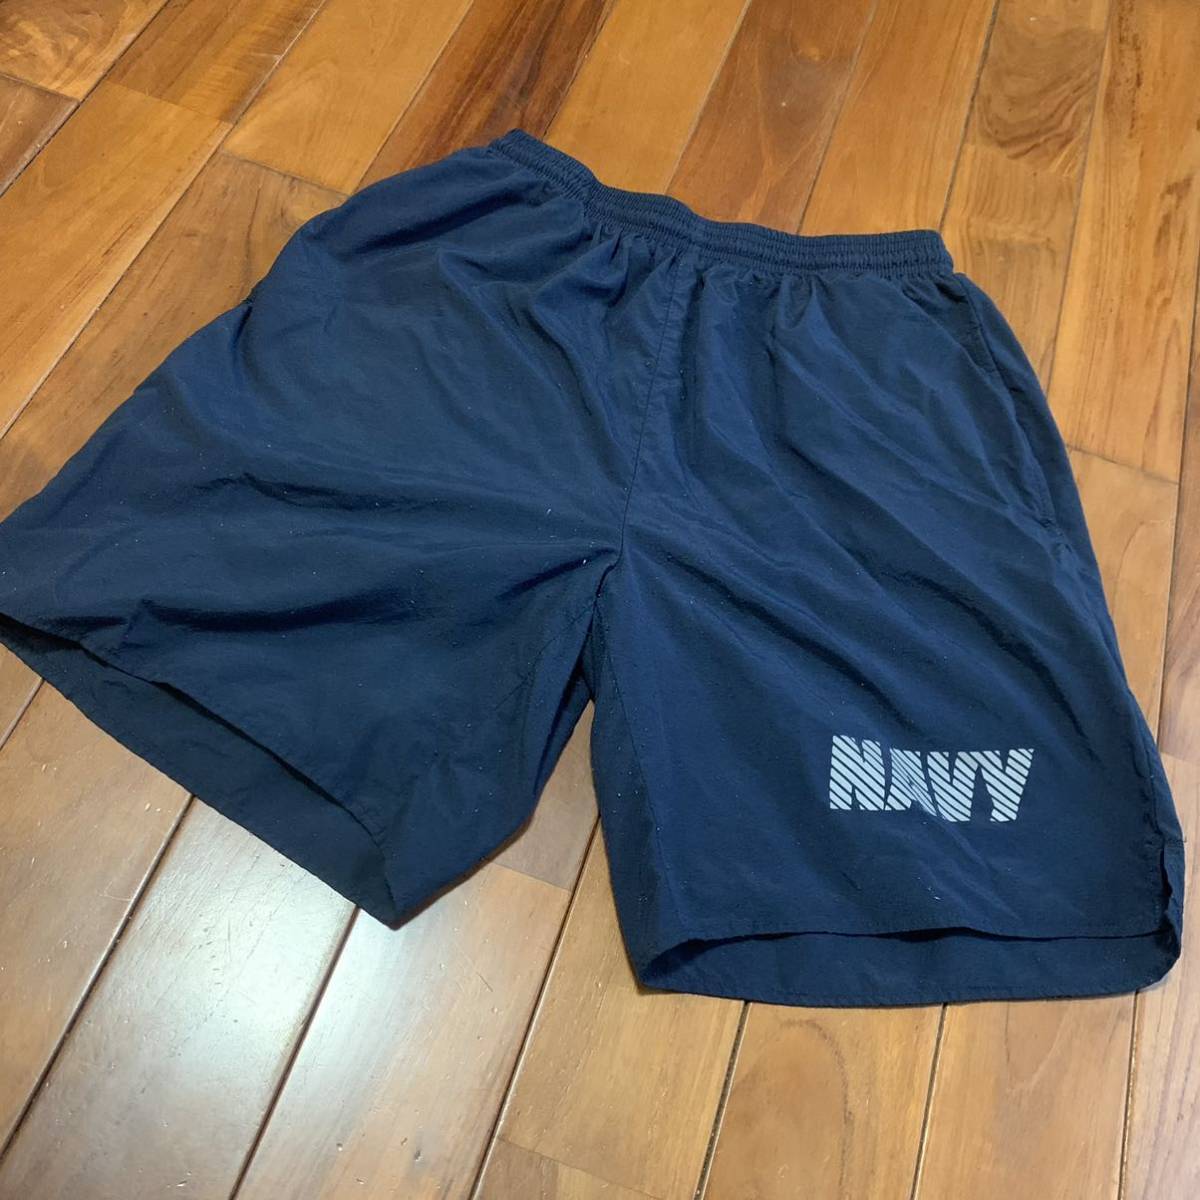  Okinawa вооруженные силы США сброшенный товар вооруженные силы США оригинал US NAVY тренировочные штаны шорты темно-синий SMALL ( контрольный номер BC215)